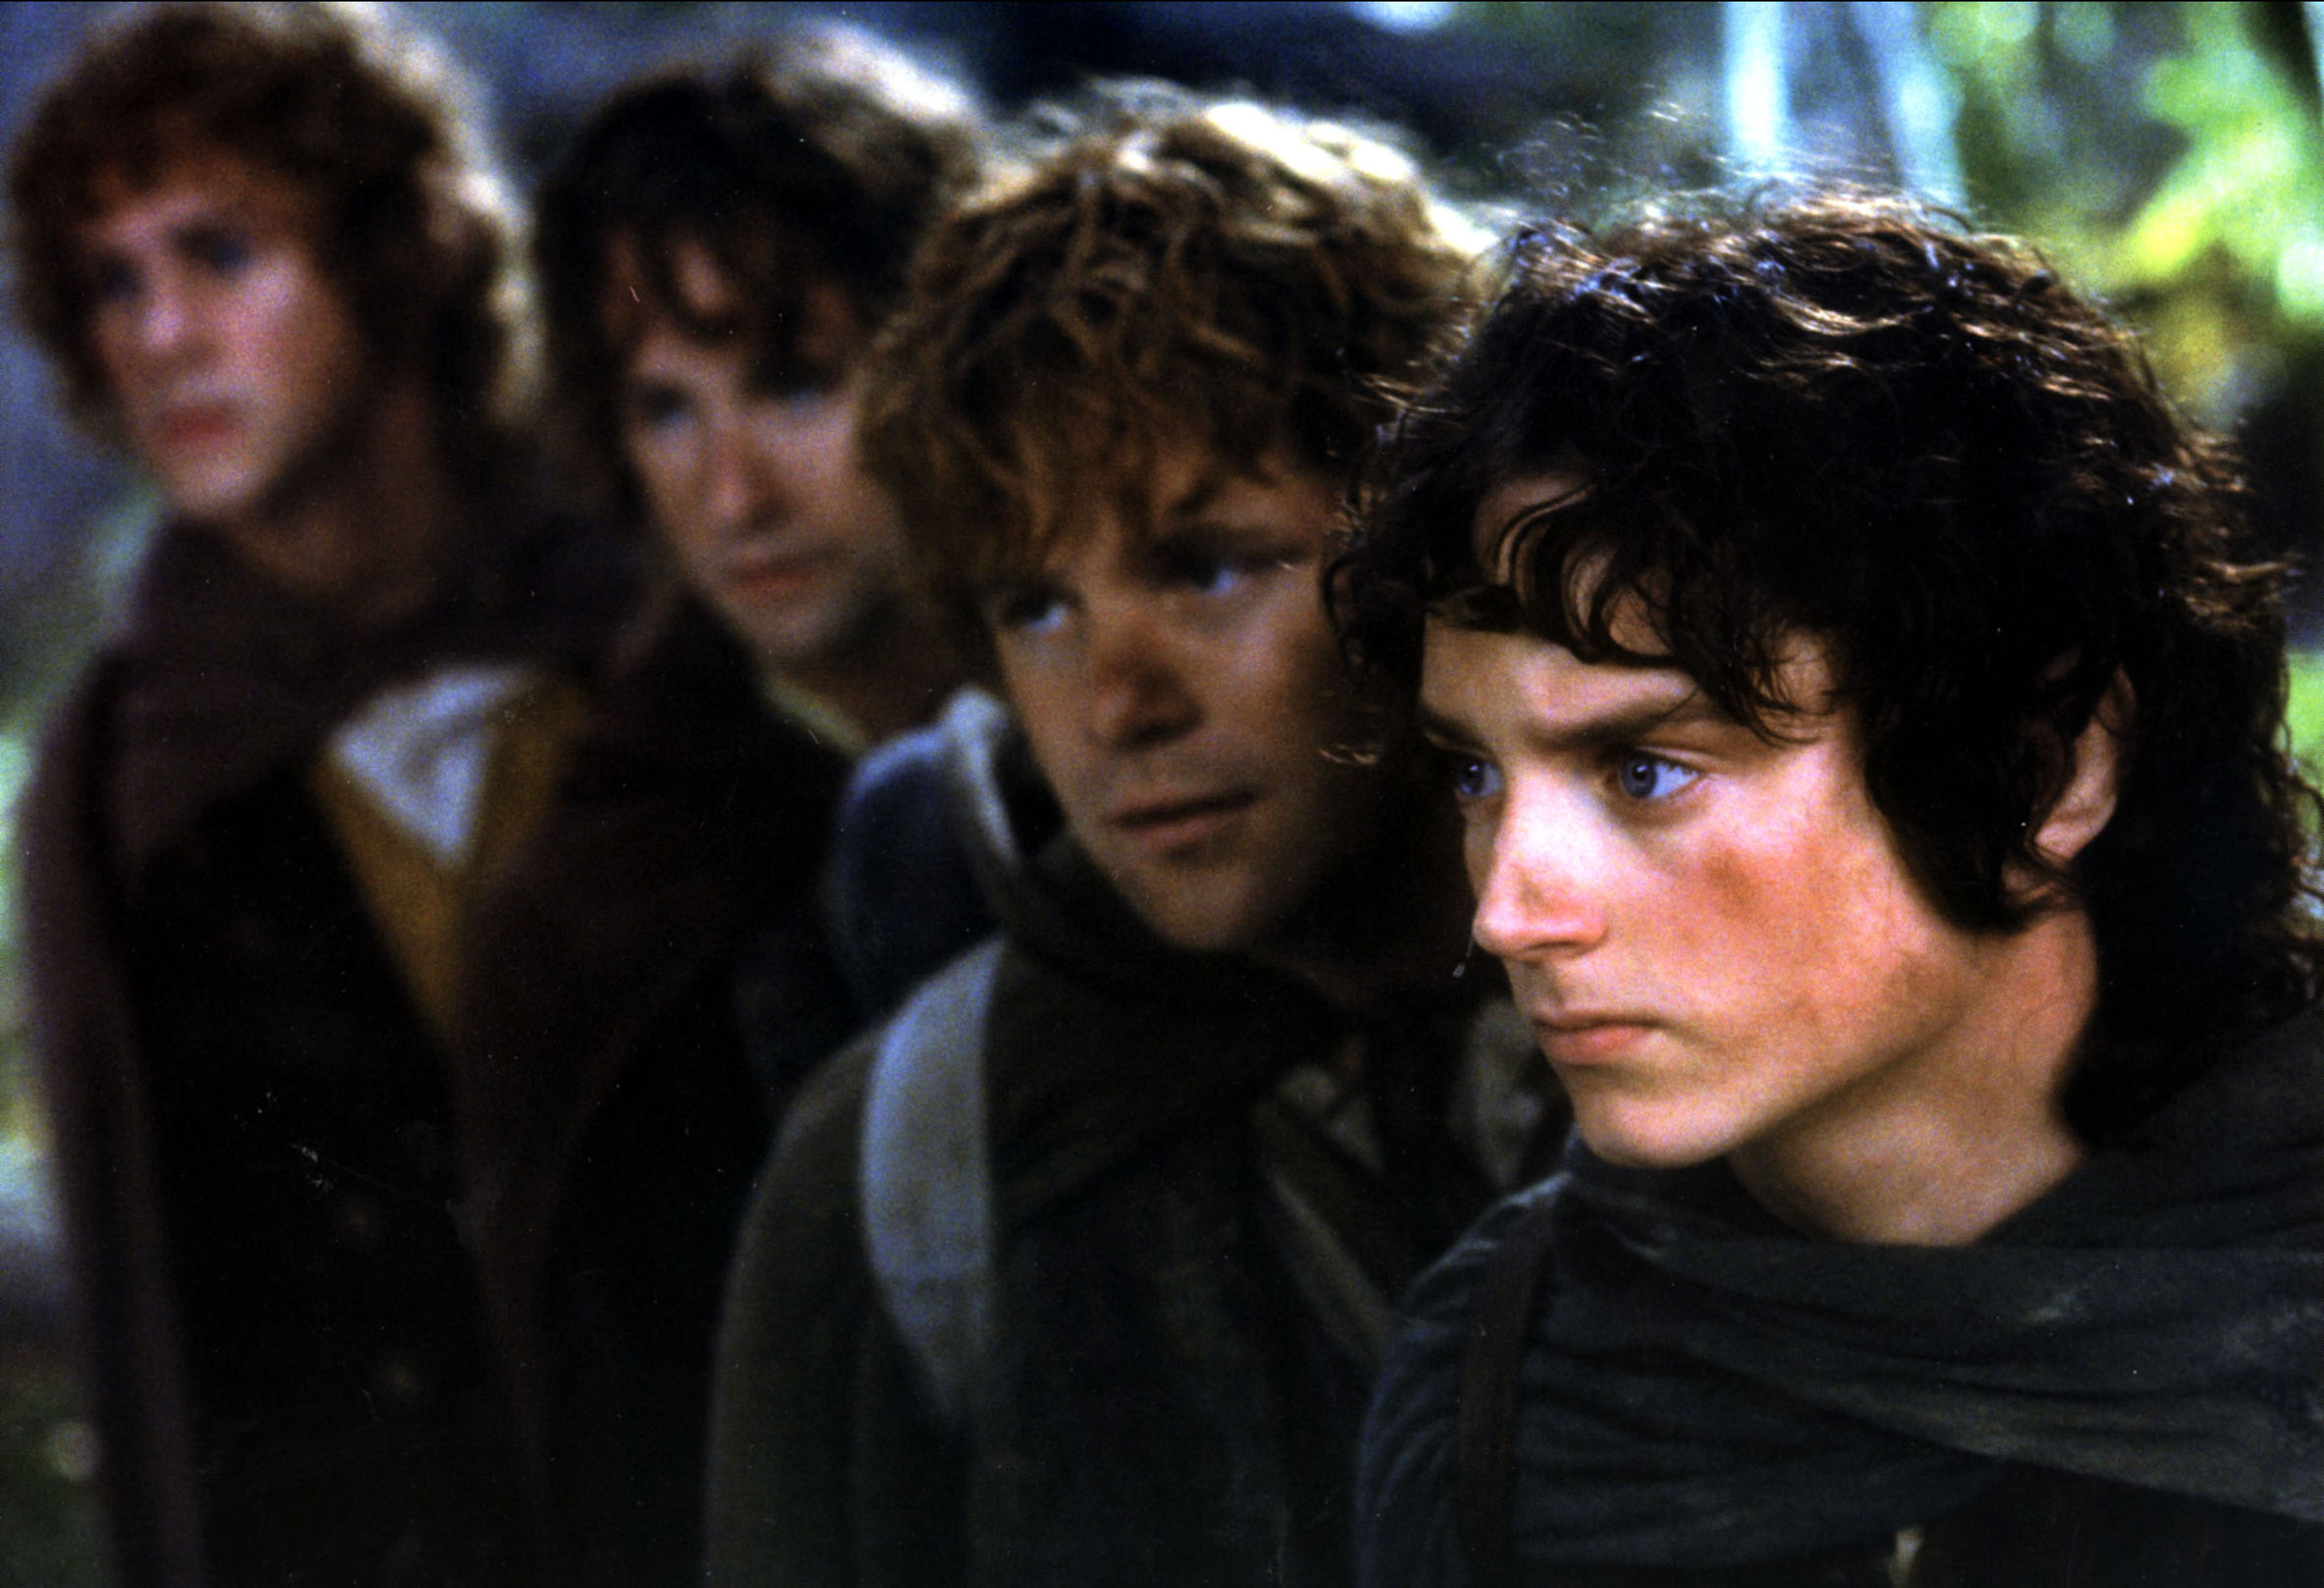 Властелин колец братство кольца полная. Мериадок Брендибак. Хоббит Фродо. Властелин колец братство кольца Фродо. Хоббиты Фродо Сэм пиппин Мерри.